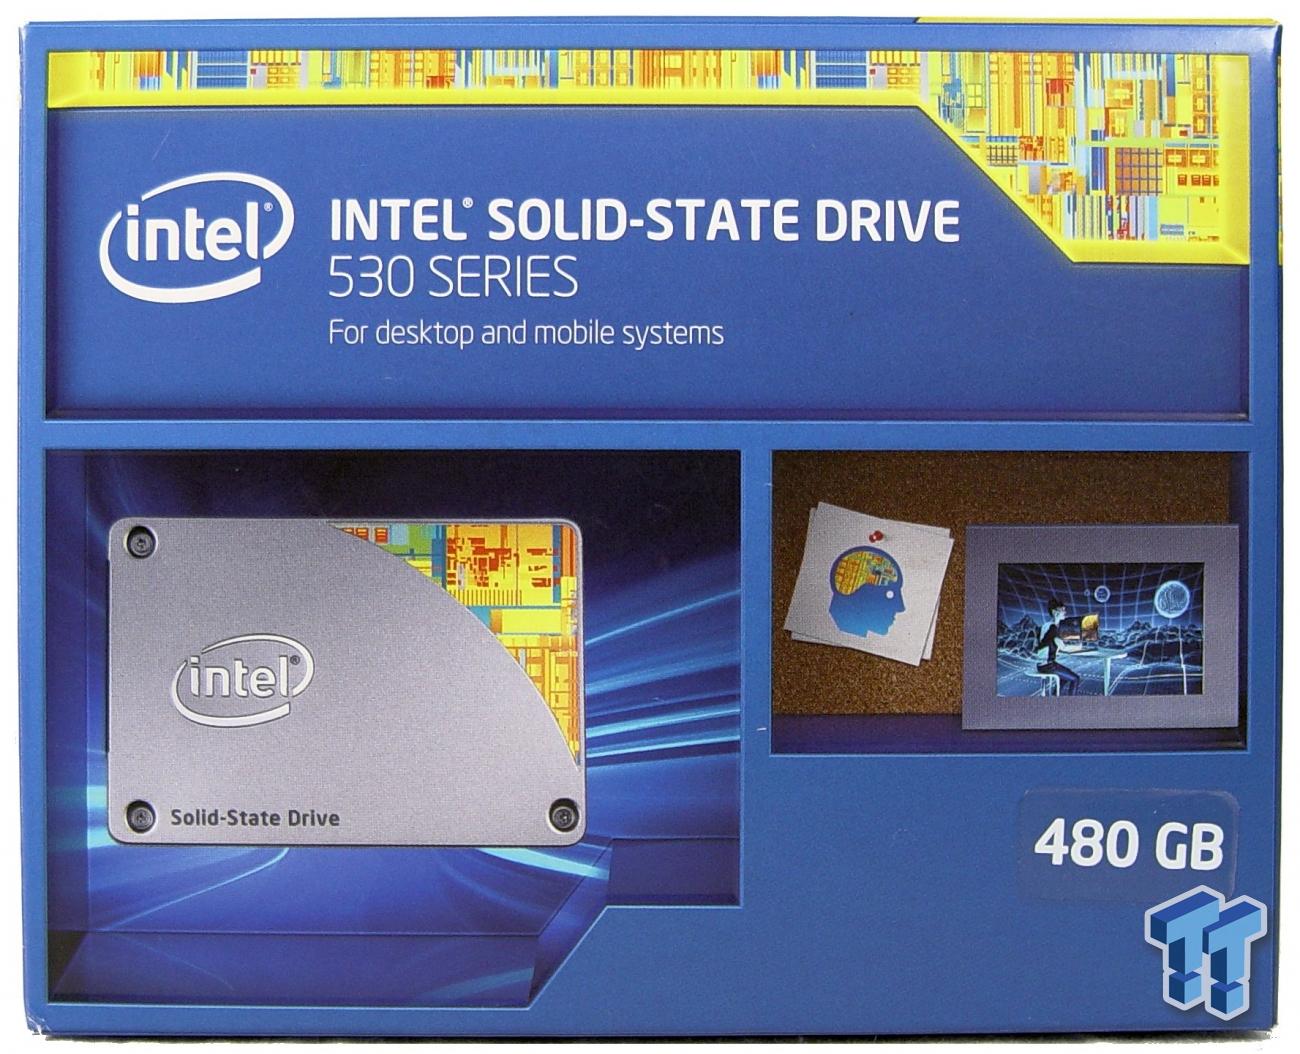 Spaceship igen Forstyrret Intel 530 Series 480GB SSD Review